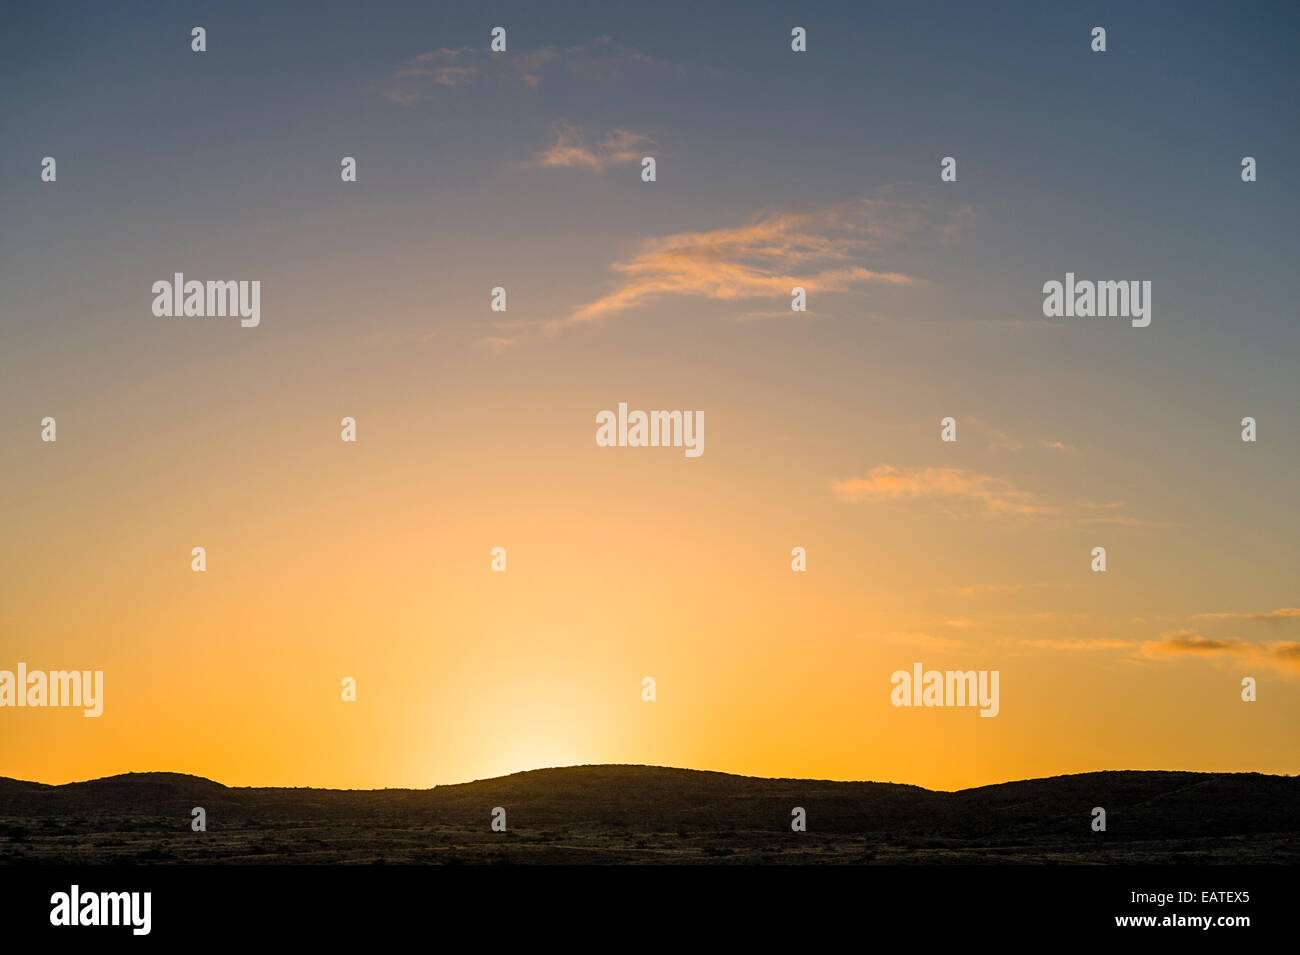 Alba salendo su una roccia arida costiera deserto in Big Sky Country. Foto Stock